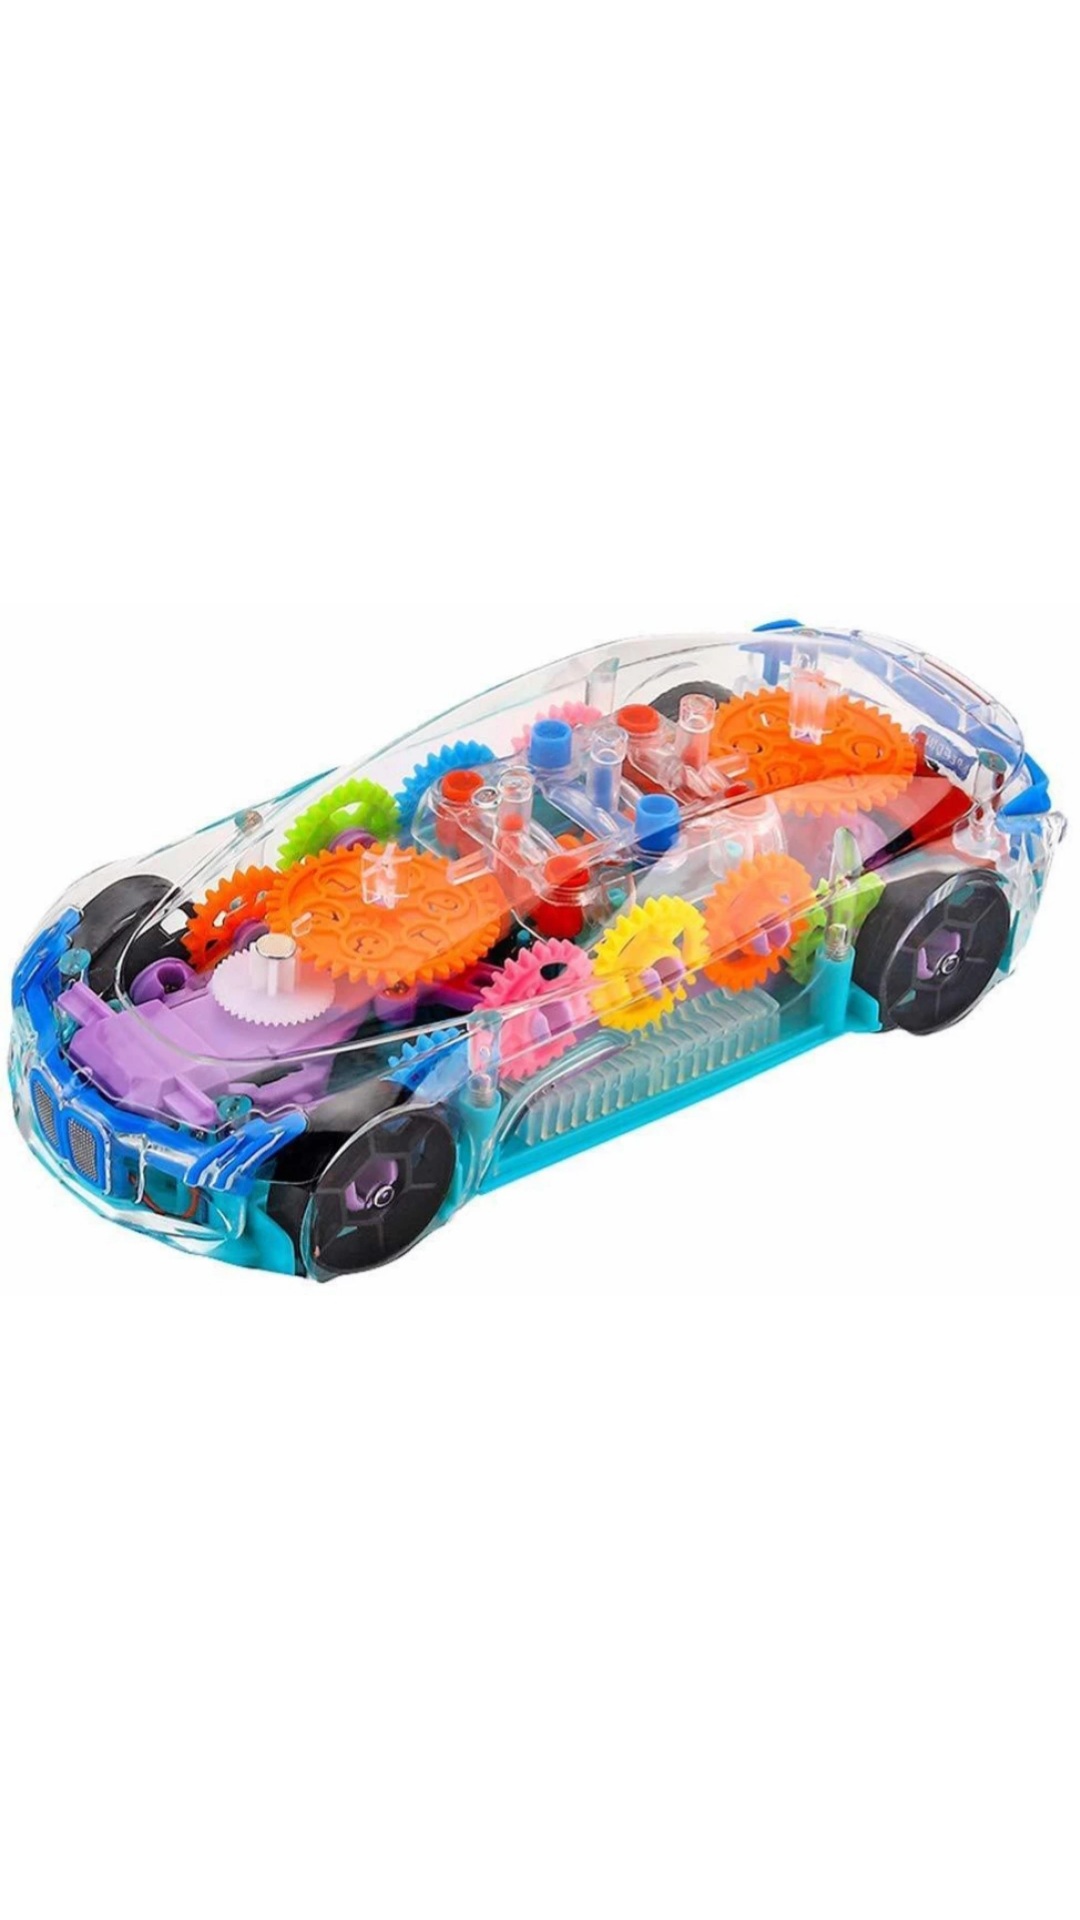 Kids racing lighting concept car